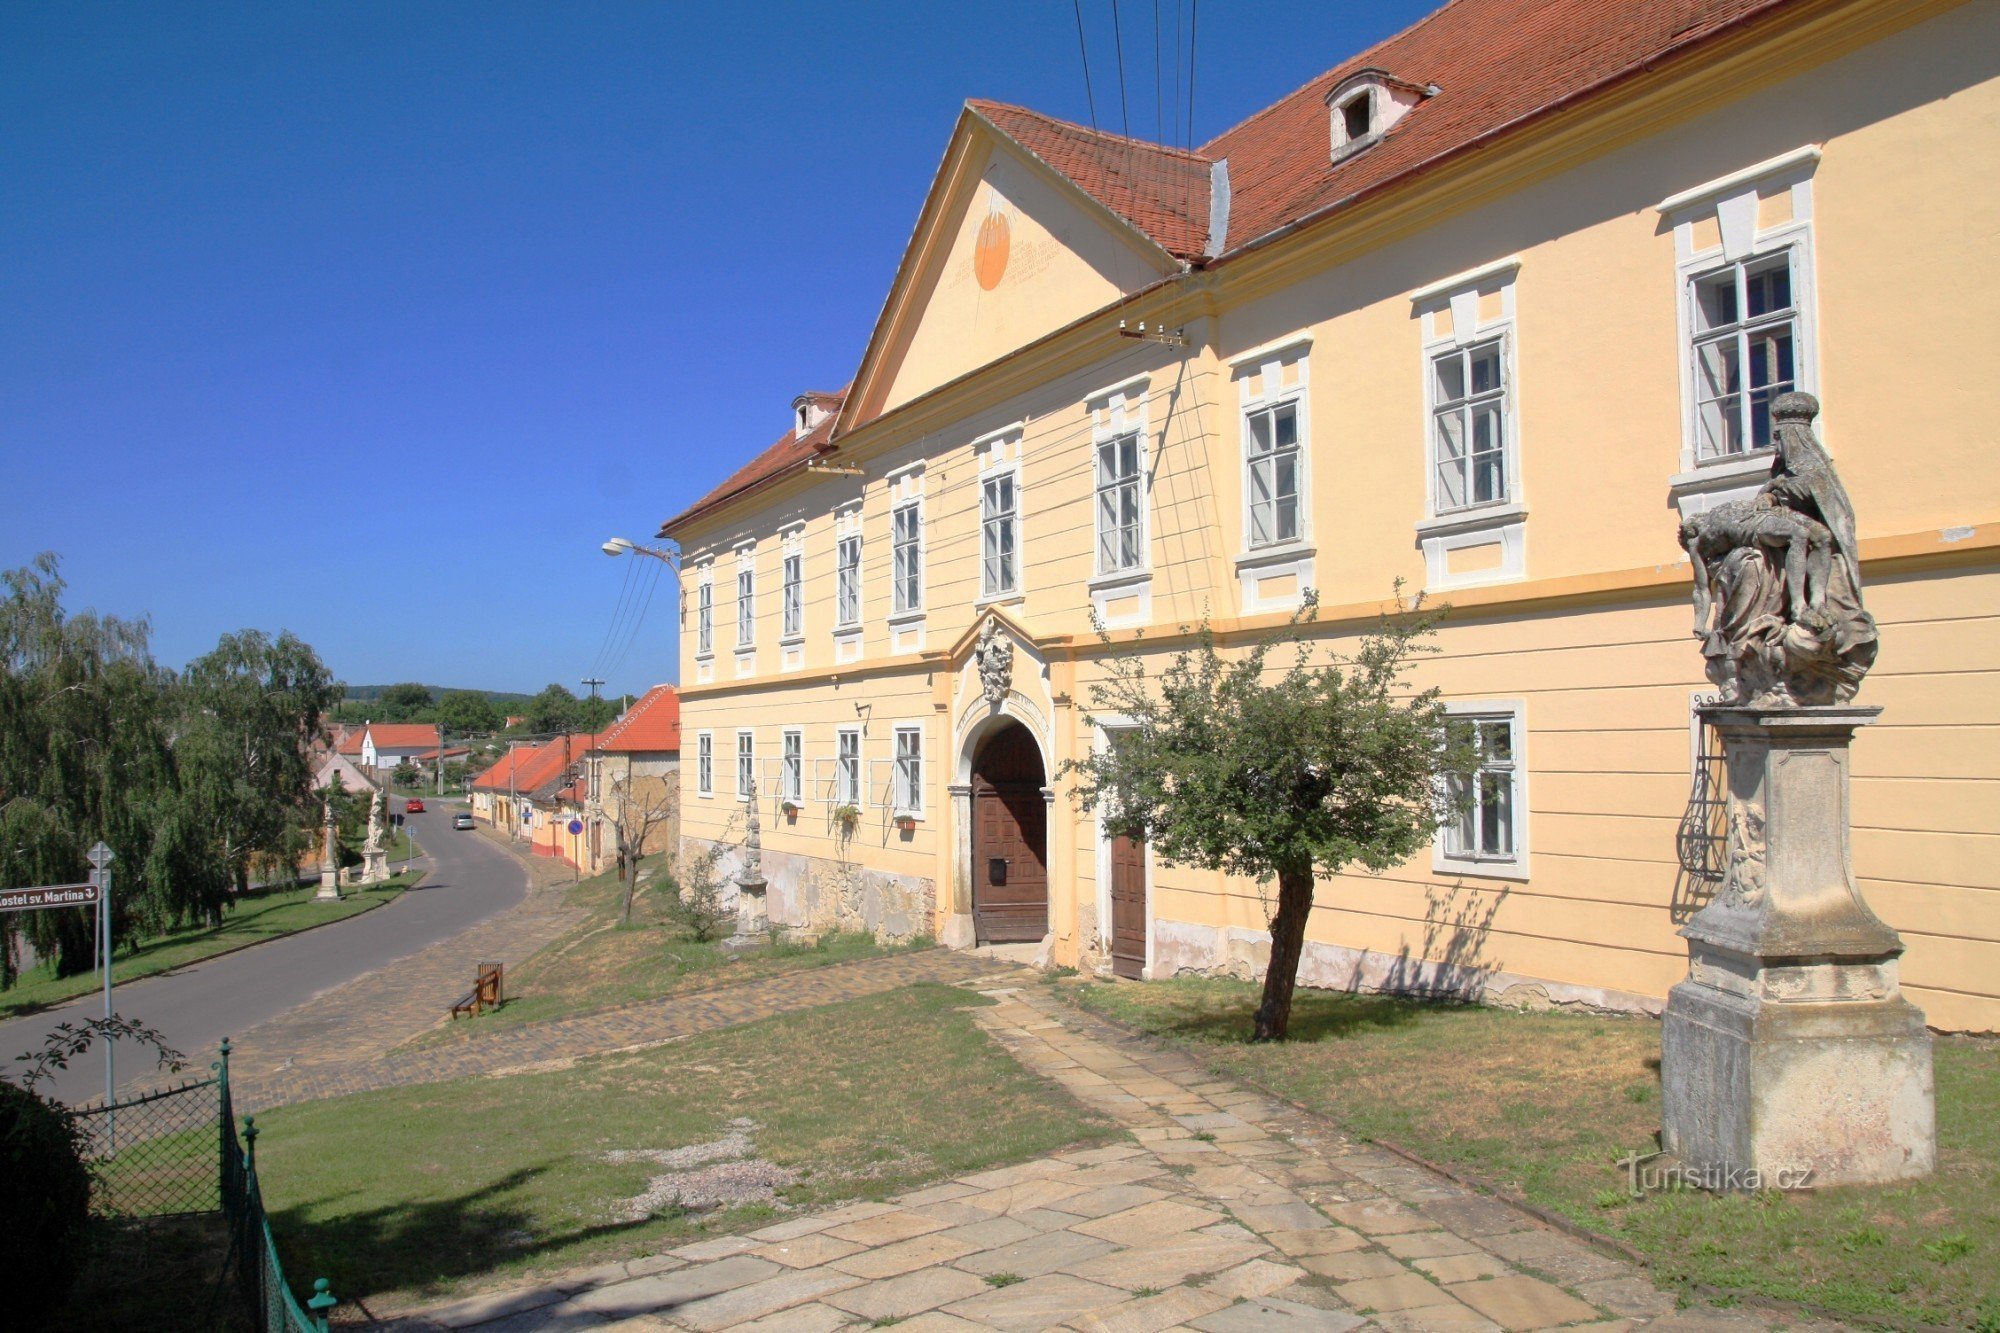 Šatov - zona de monumentos da aldeia